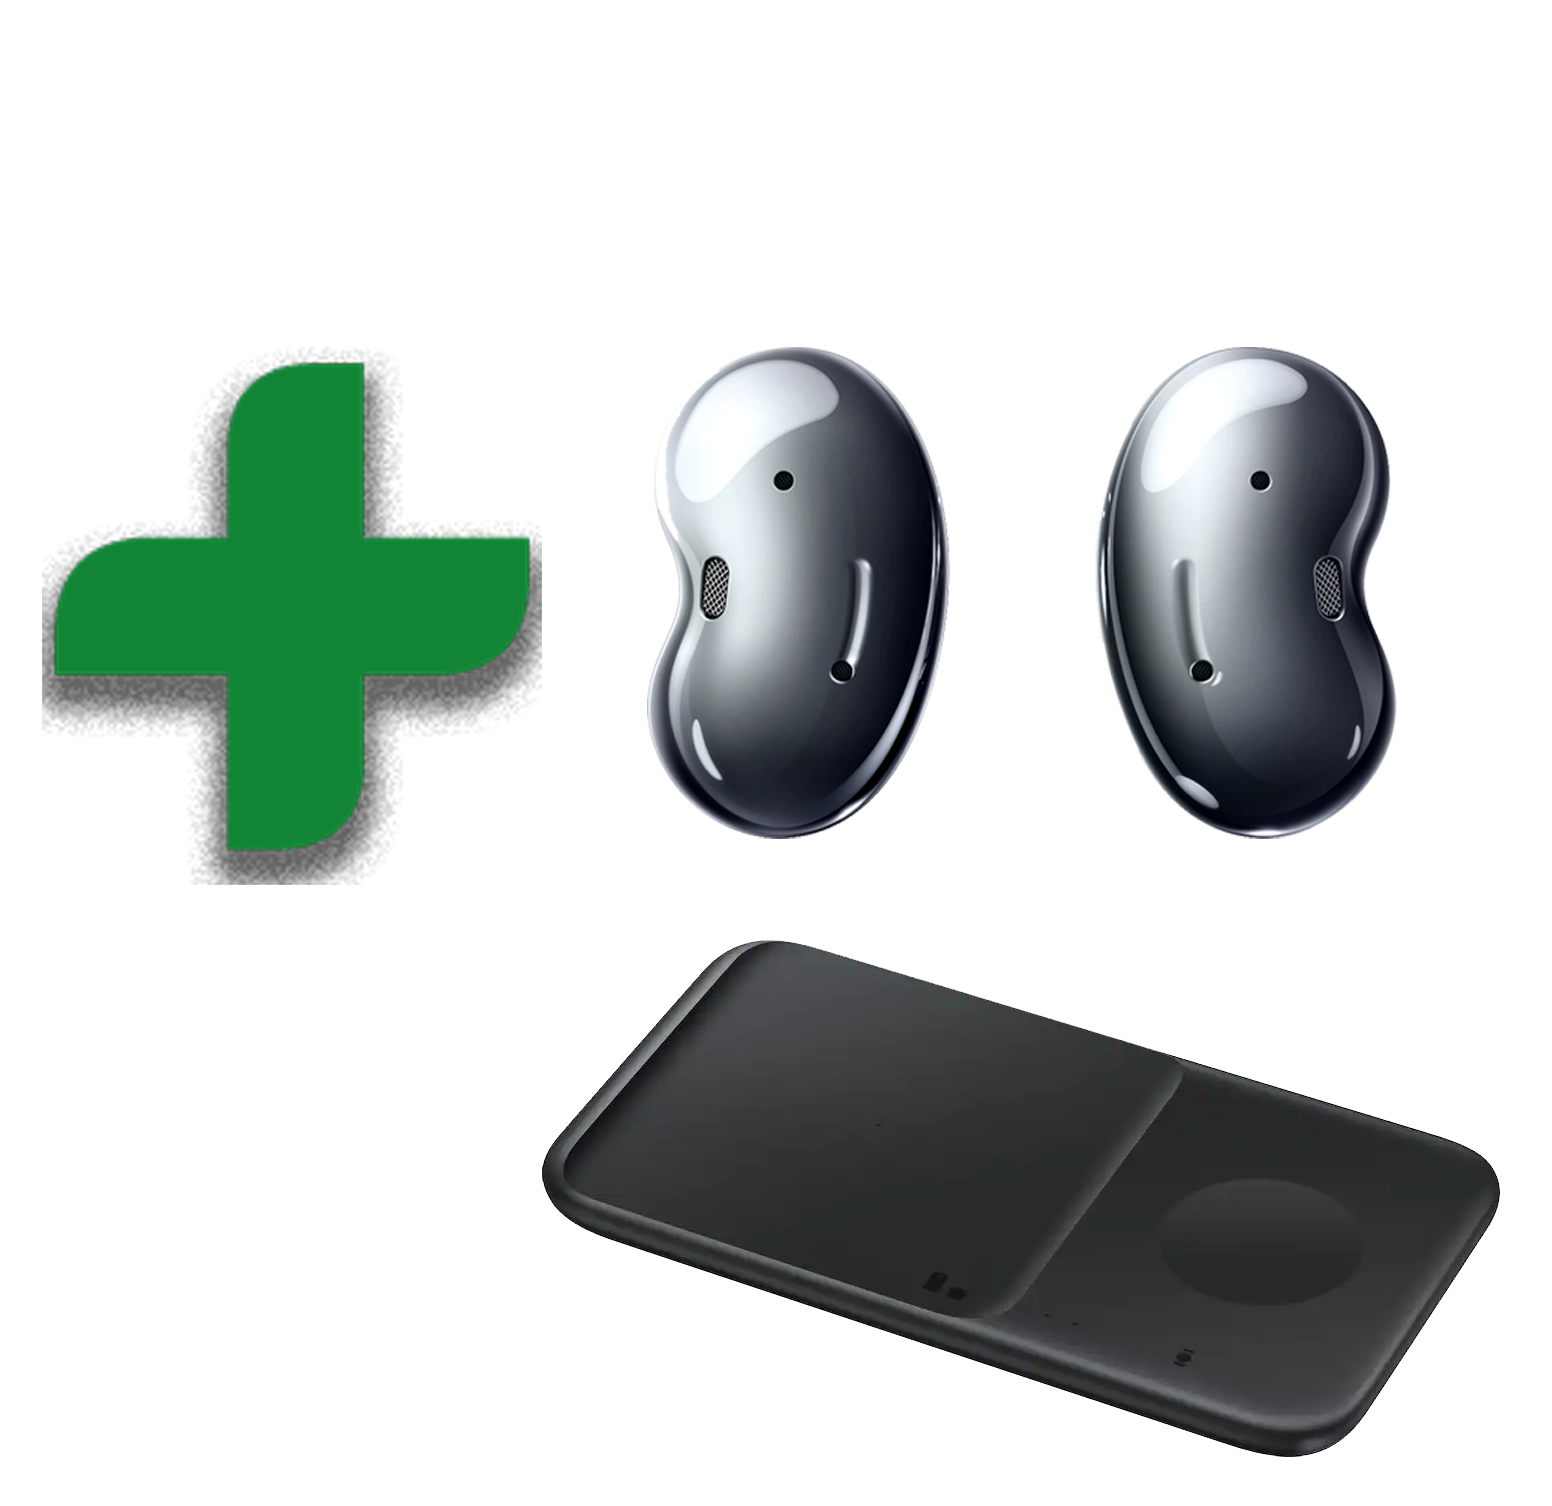 Köp Samsung S21FE / S20FE 5G mellan 2-29 maj och få hörlurar och Duo laddare på köpet. Hämtas i Samsung members appen!